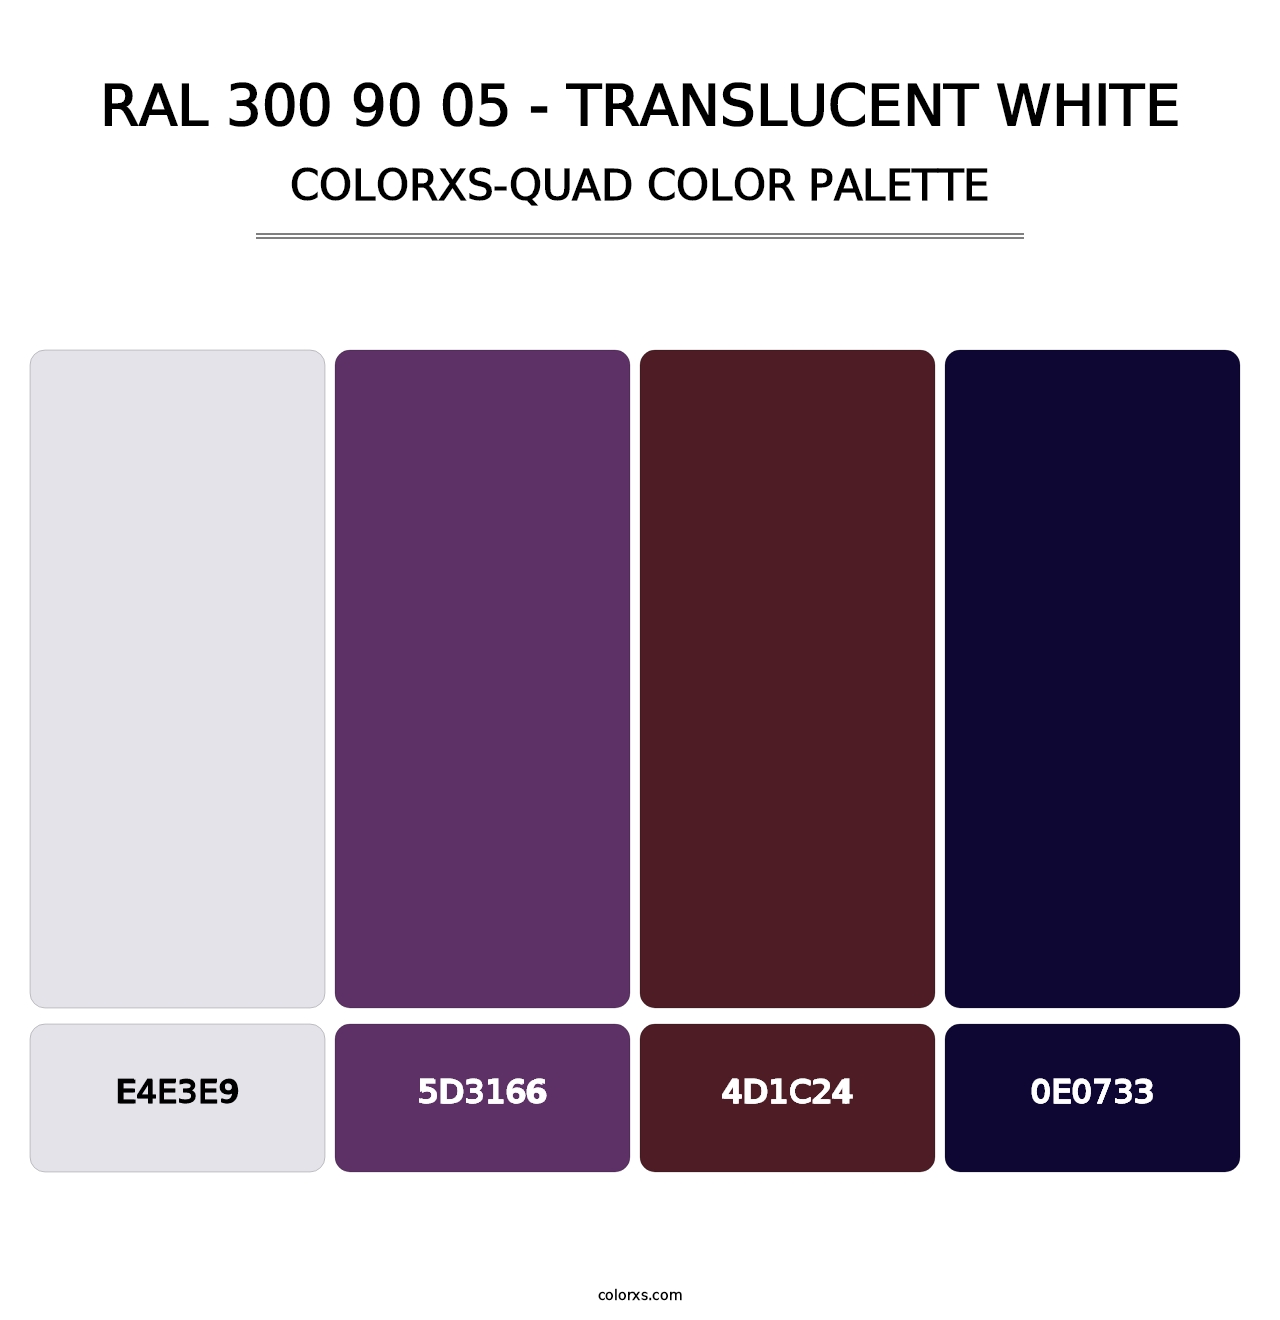 RAL 300 90 05 - Translucent White - Colorxs Quad Palette